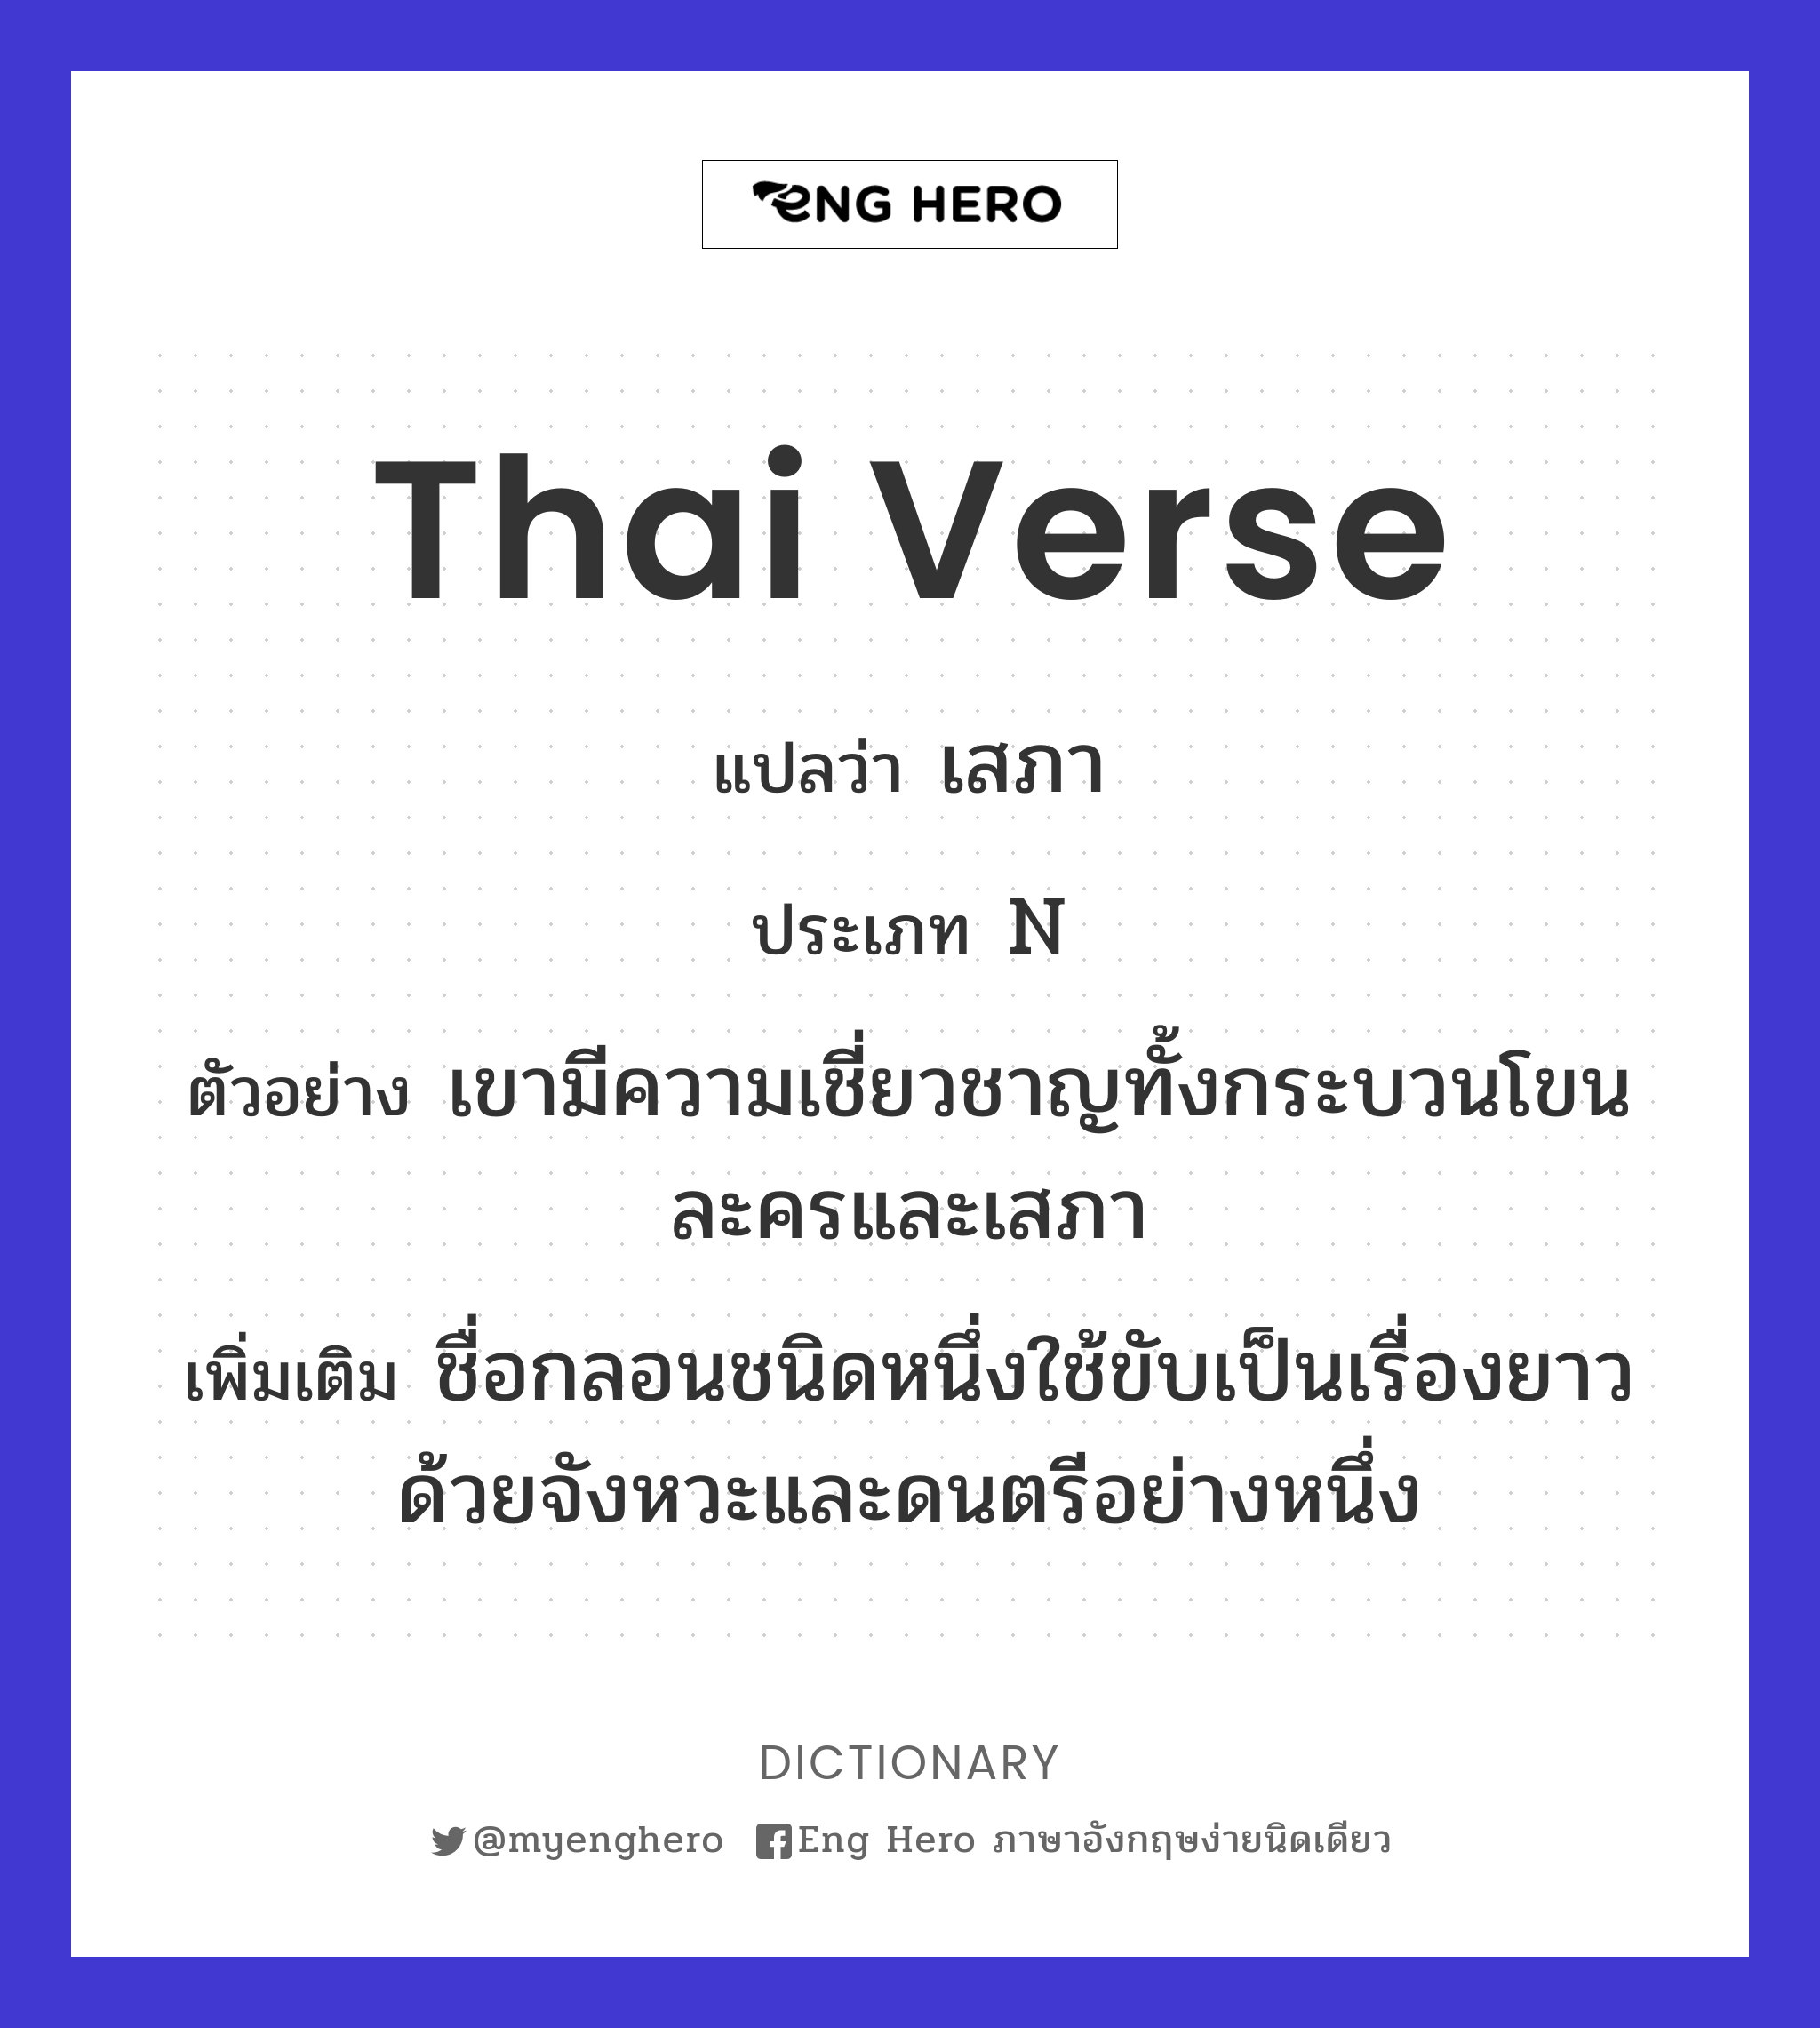 Thai verse